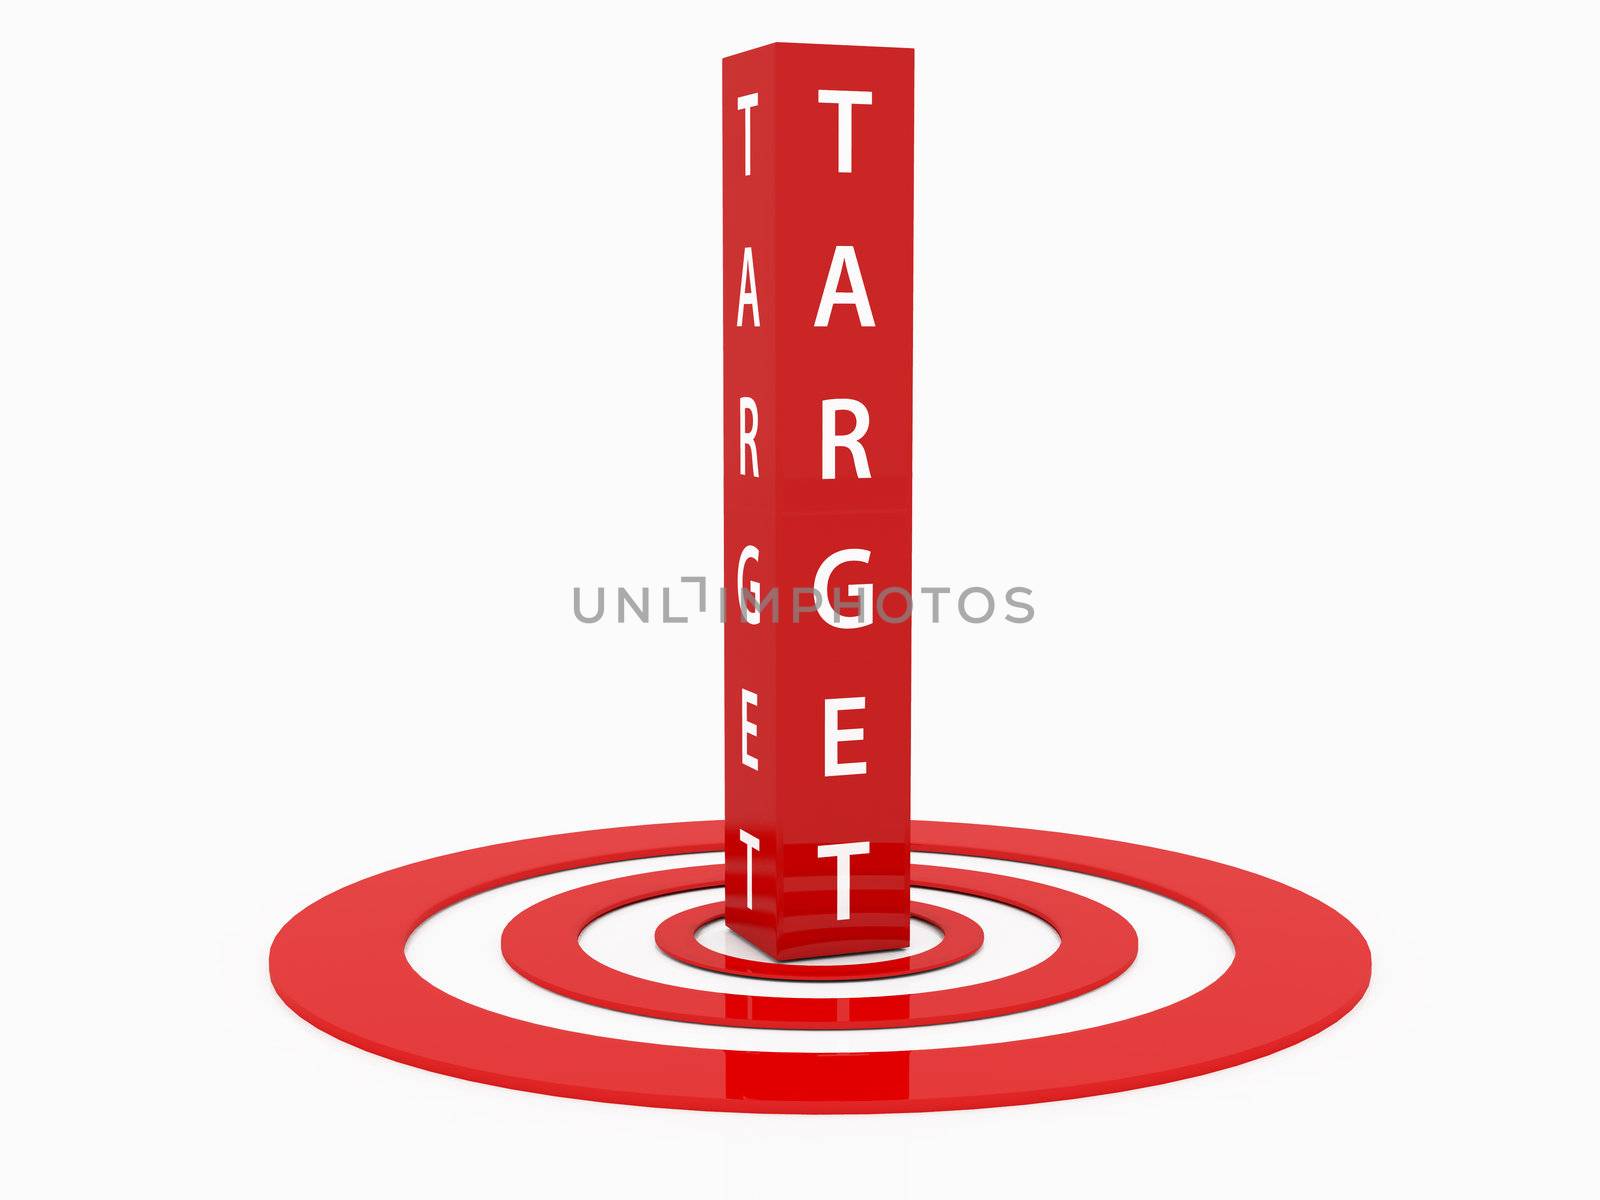 Target to Target by niglaynike